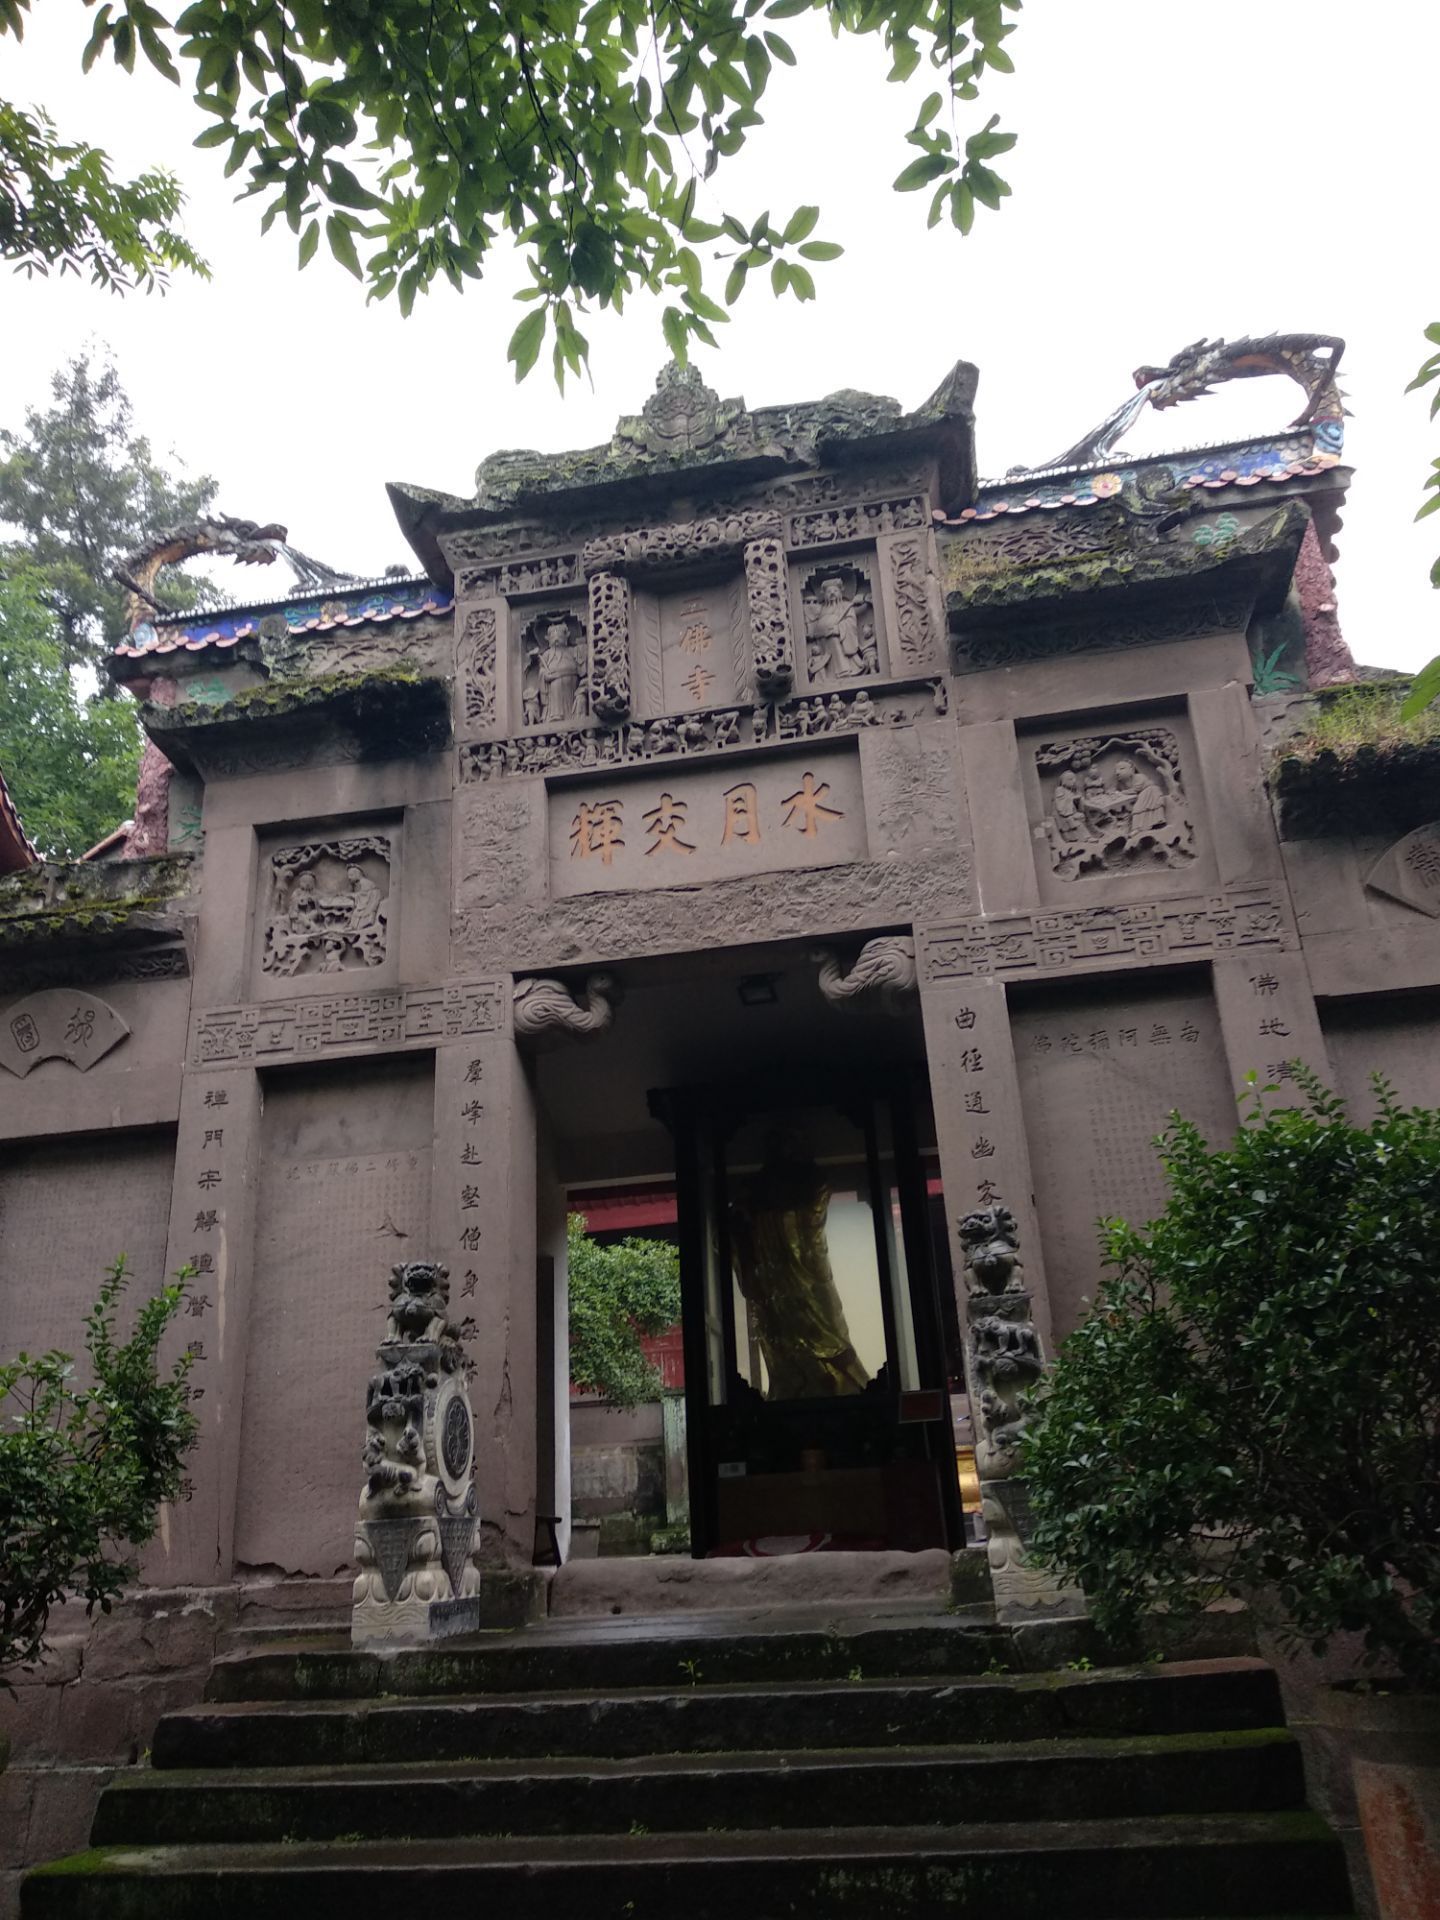 【携程攻略】重庆涞滩古镇景点,涞滩古镇有许多可去的景点。有文昌宫，古戏台，瓮城，上下二佛寺。特…